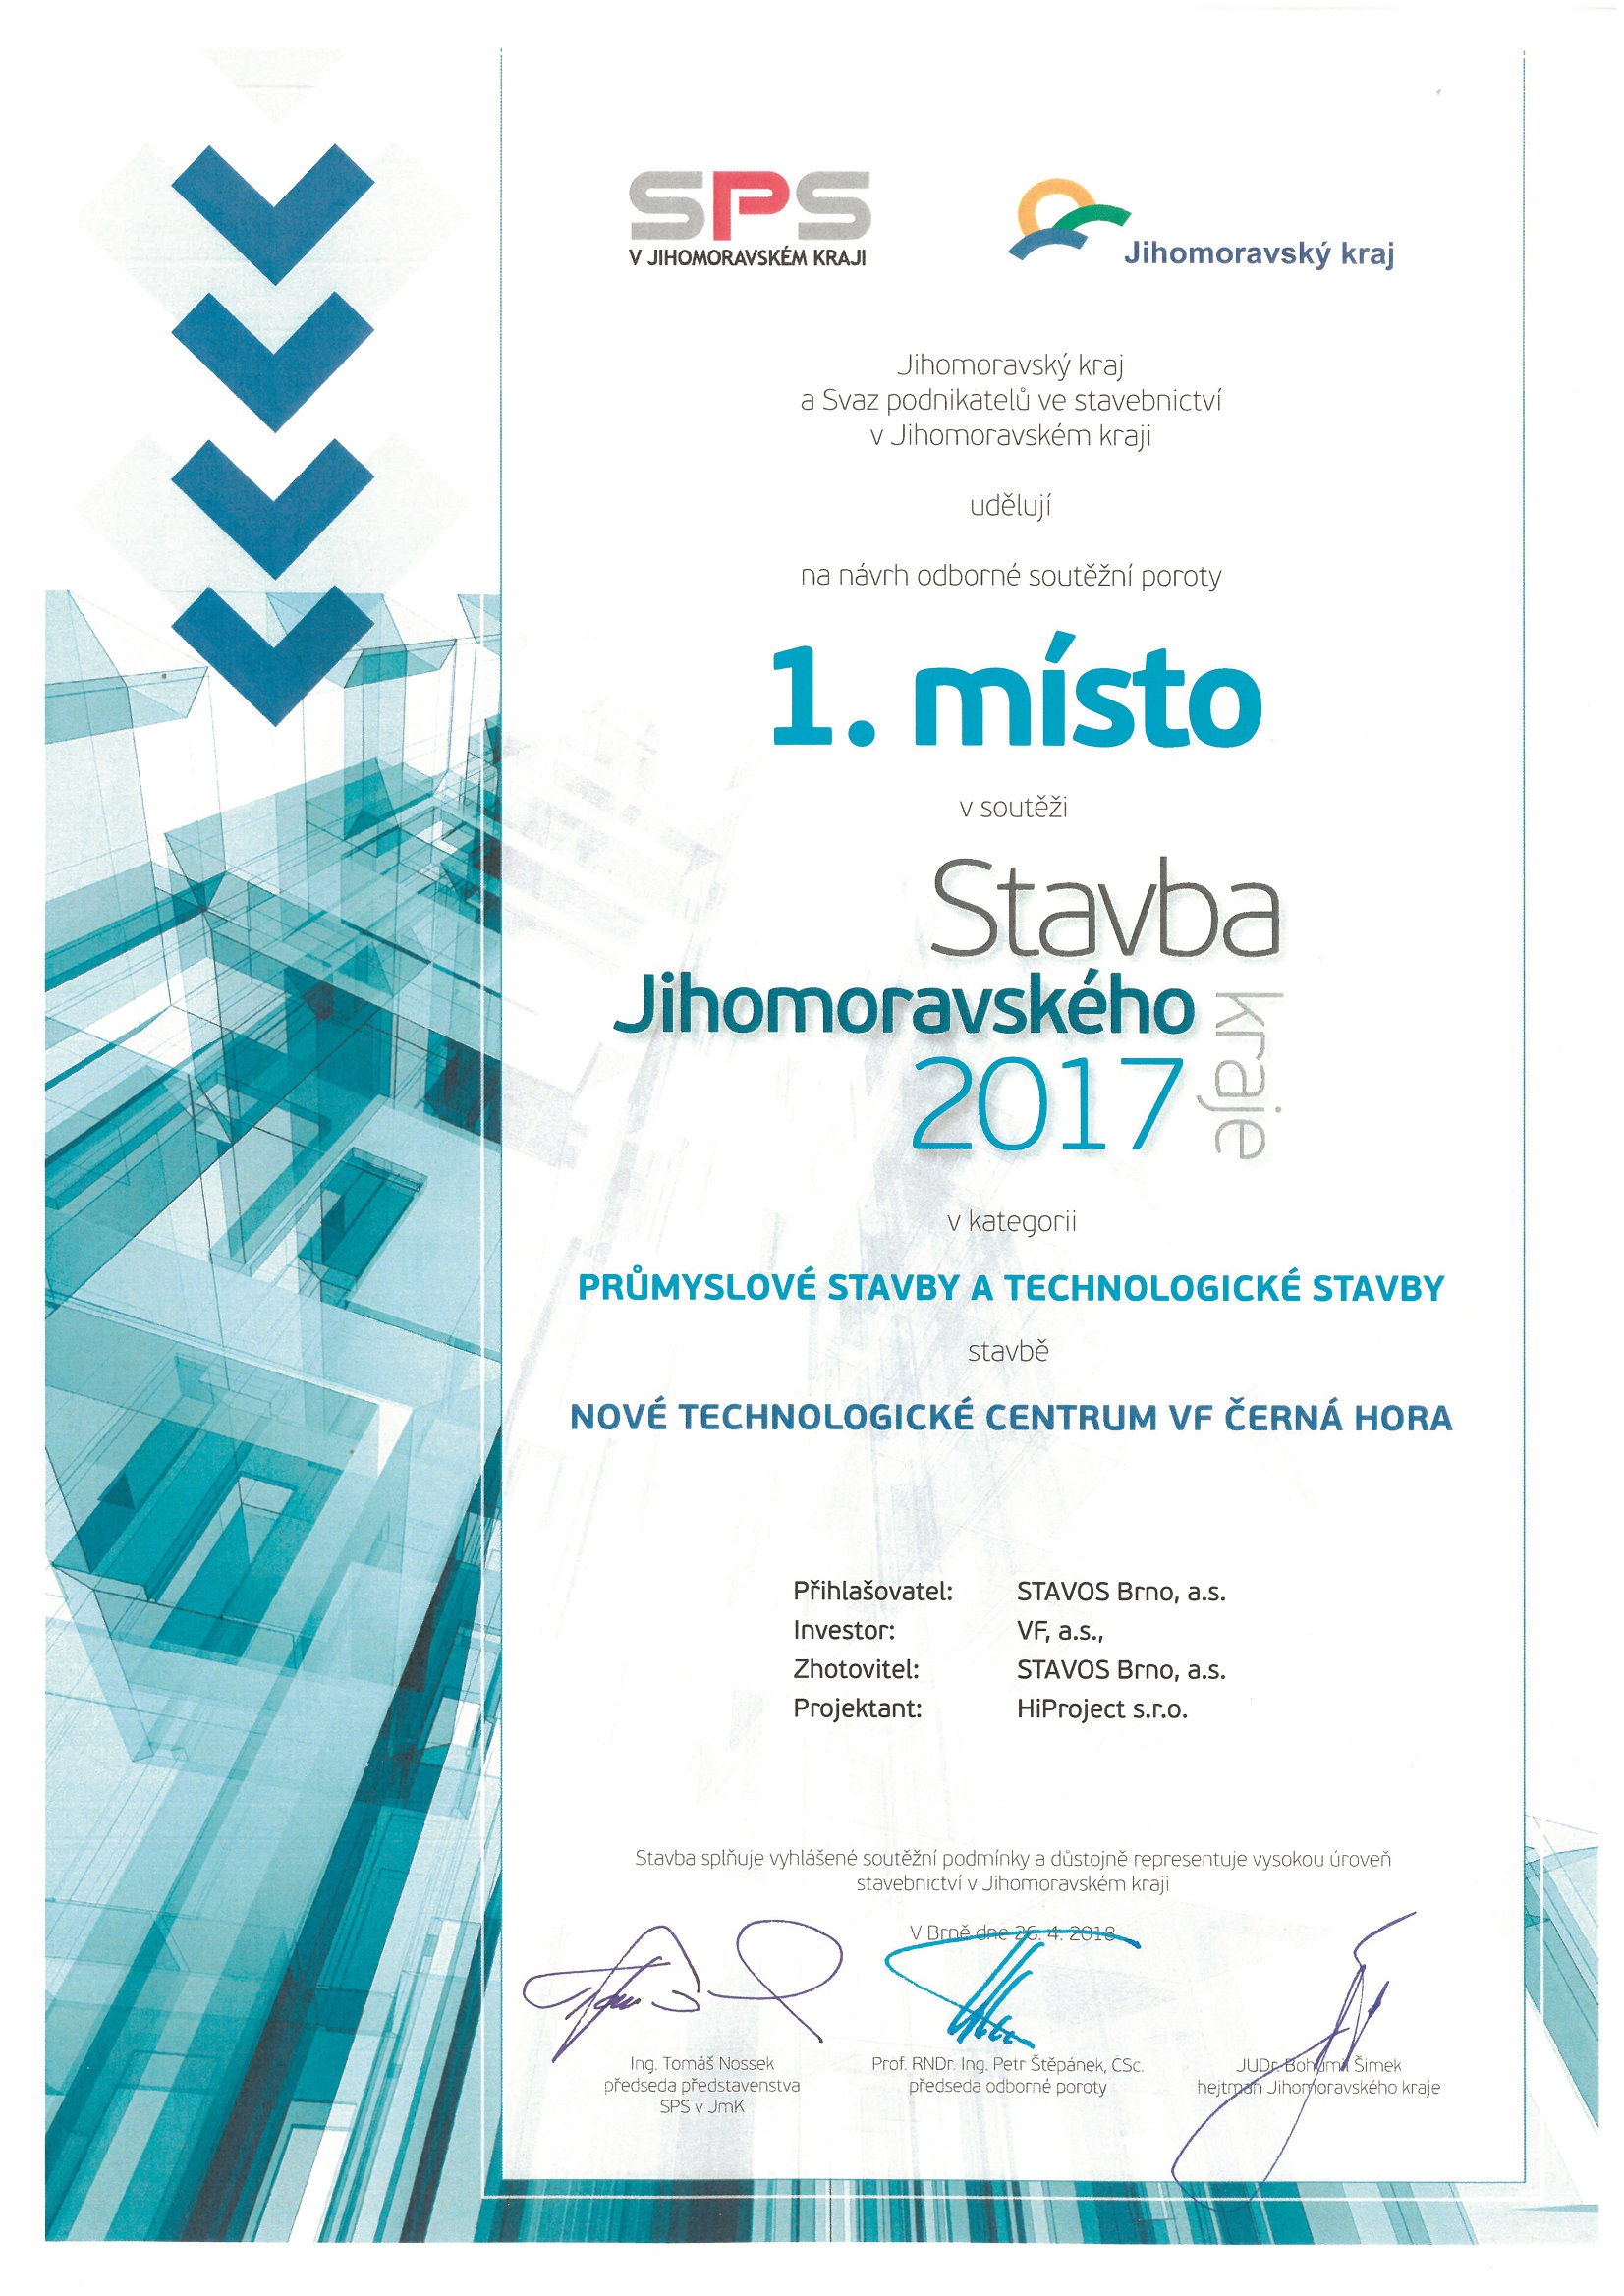 STAVBA JMK 2017 - 1. místo